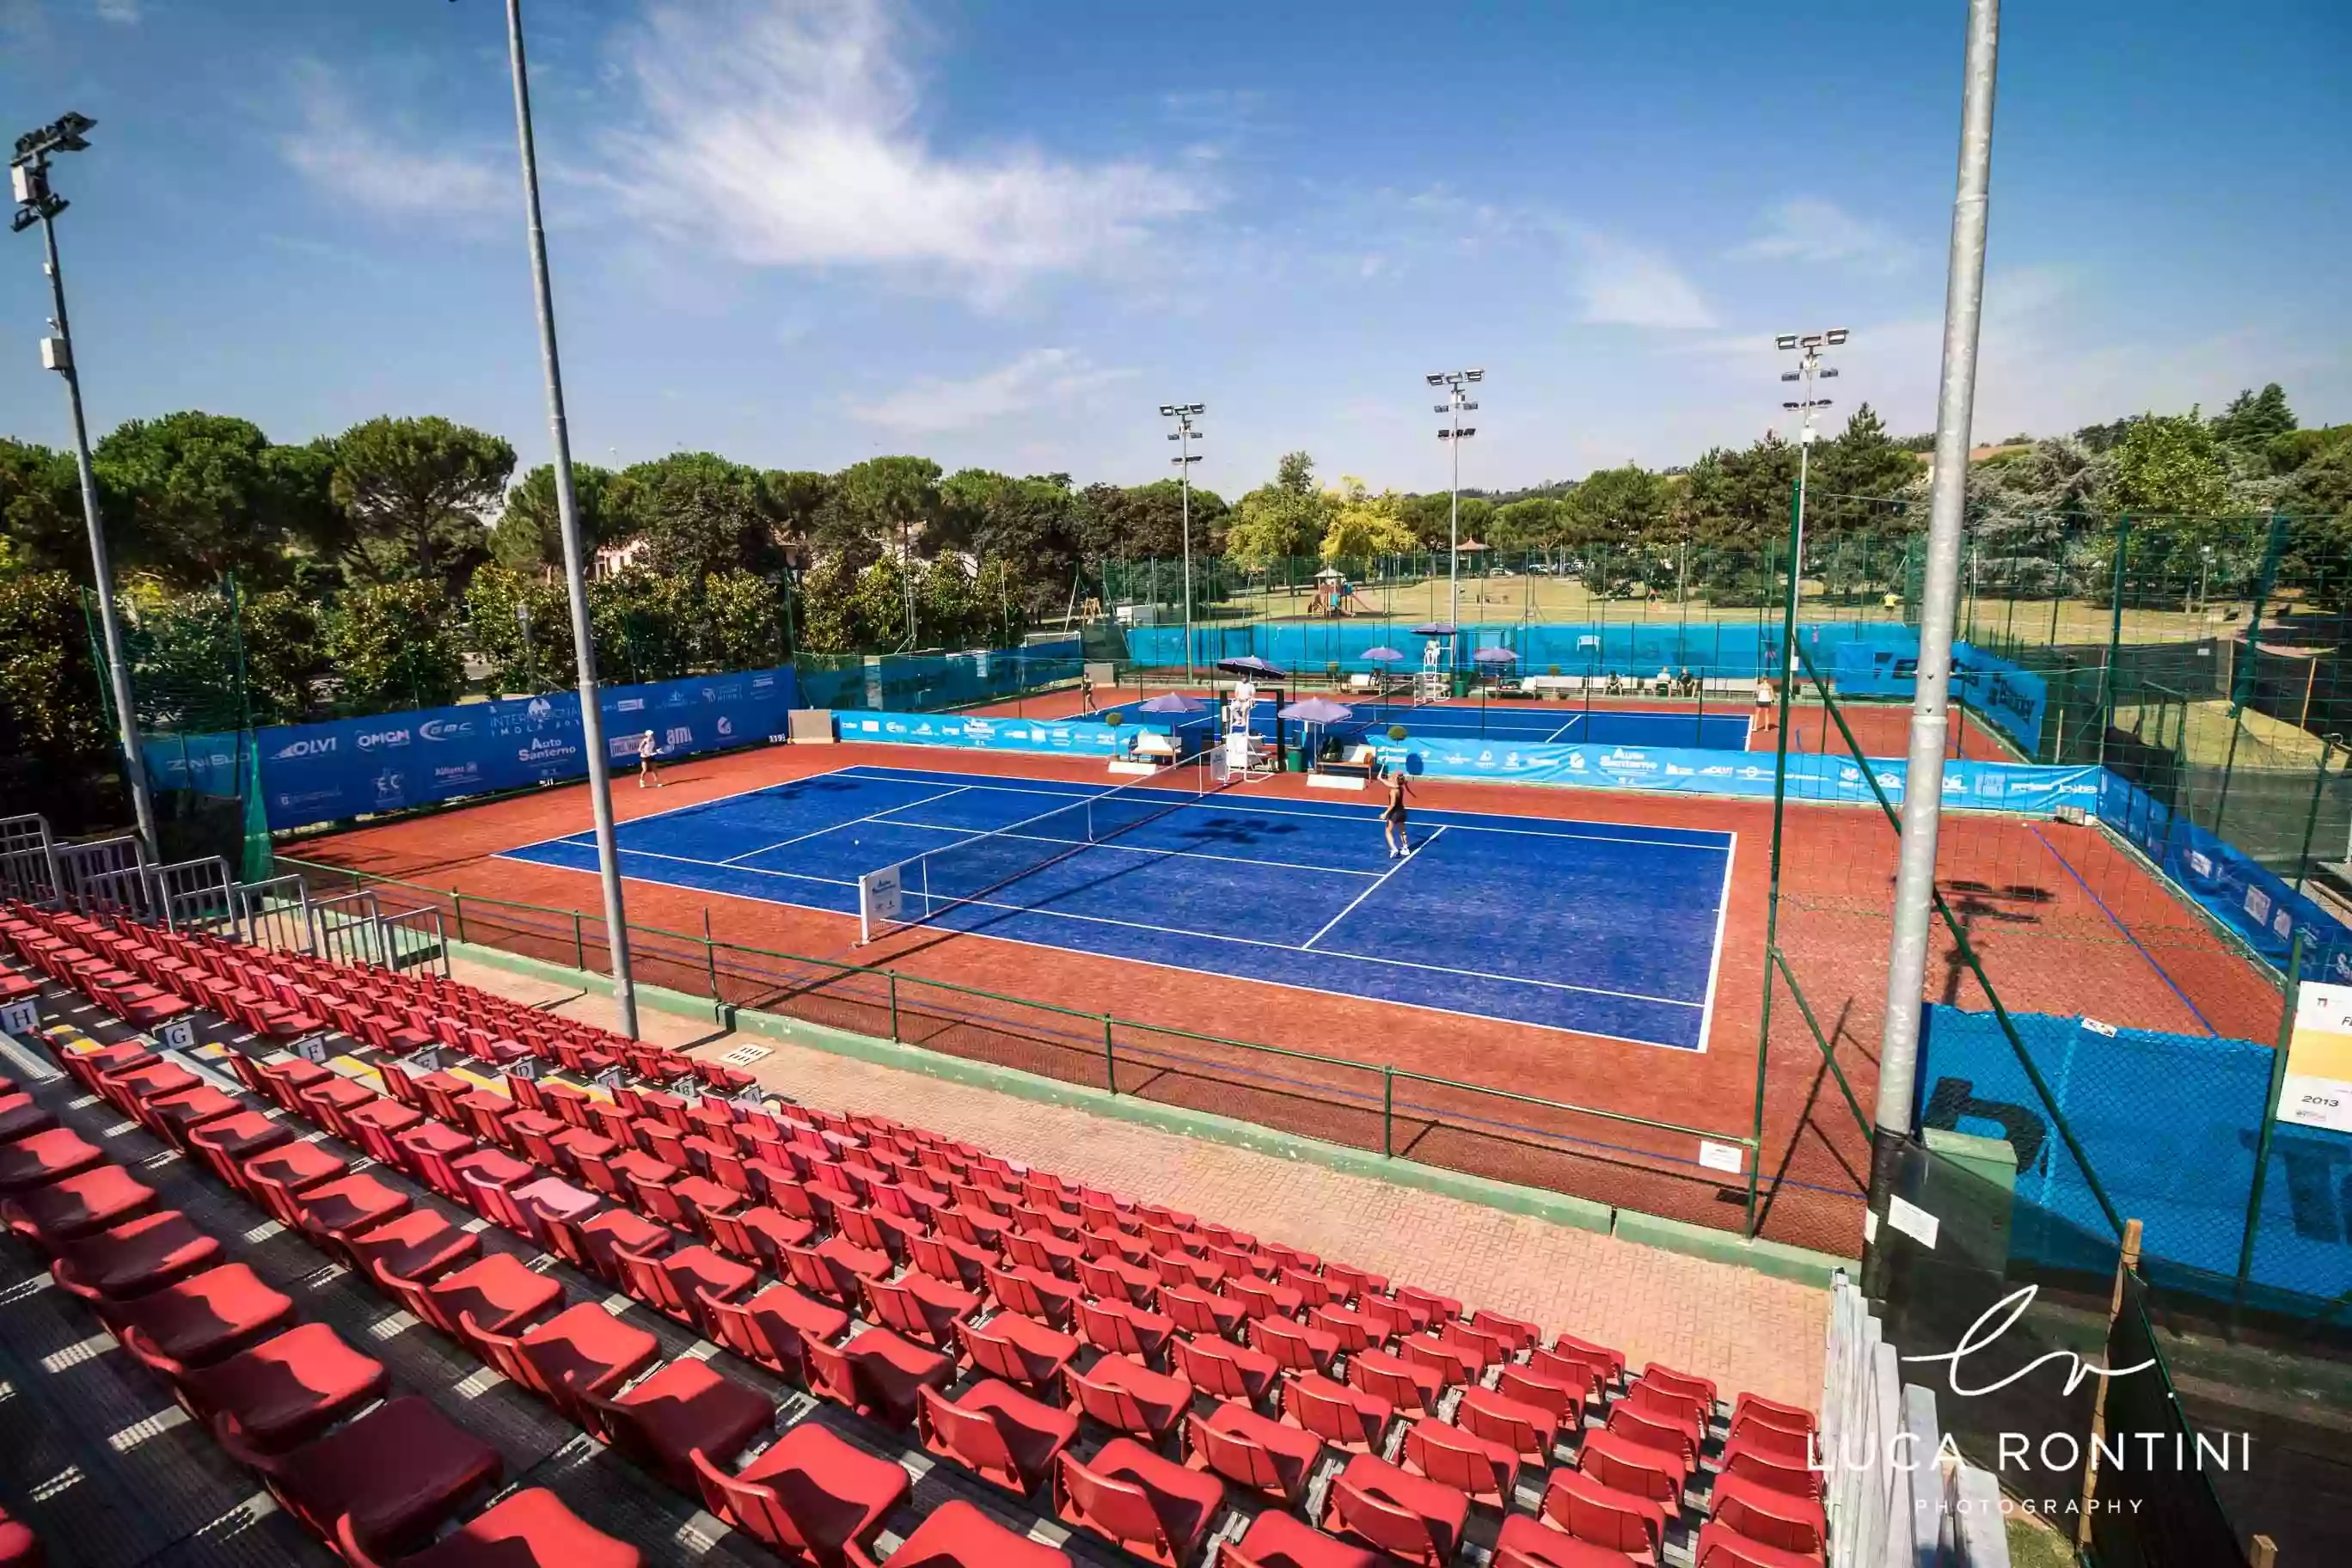 Tozzona Tennis Park Associazione Sportiva Dilettantistica